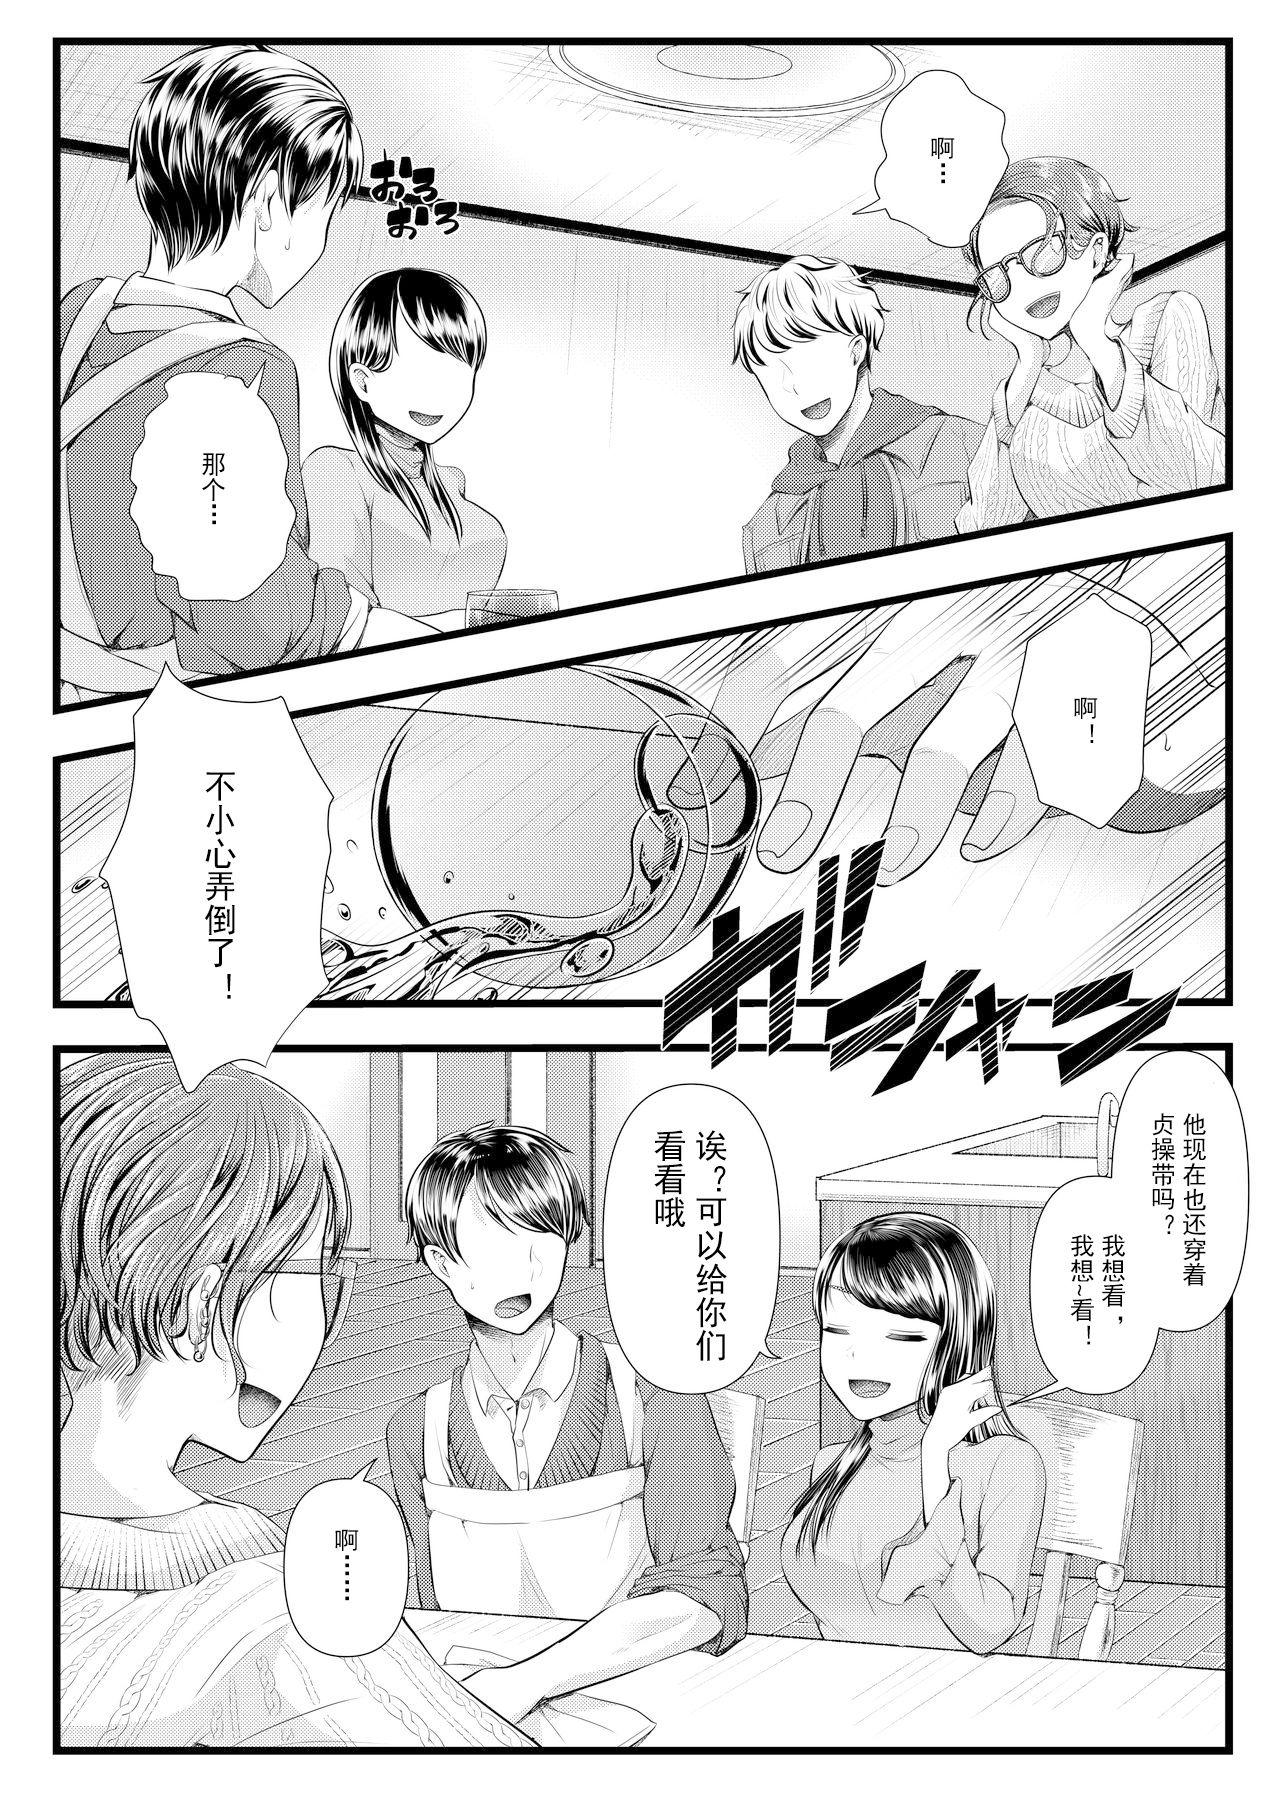 Classroom Hajimete no Netorare Maso-ka Choukyou 4 - Original Mas - Page 5